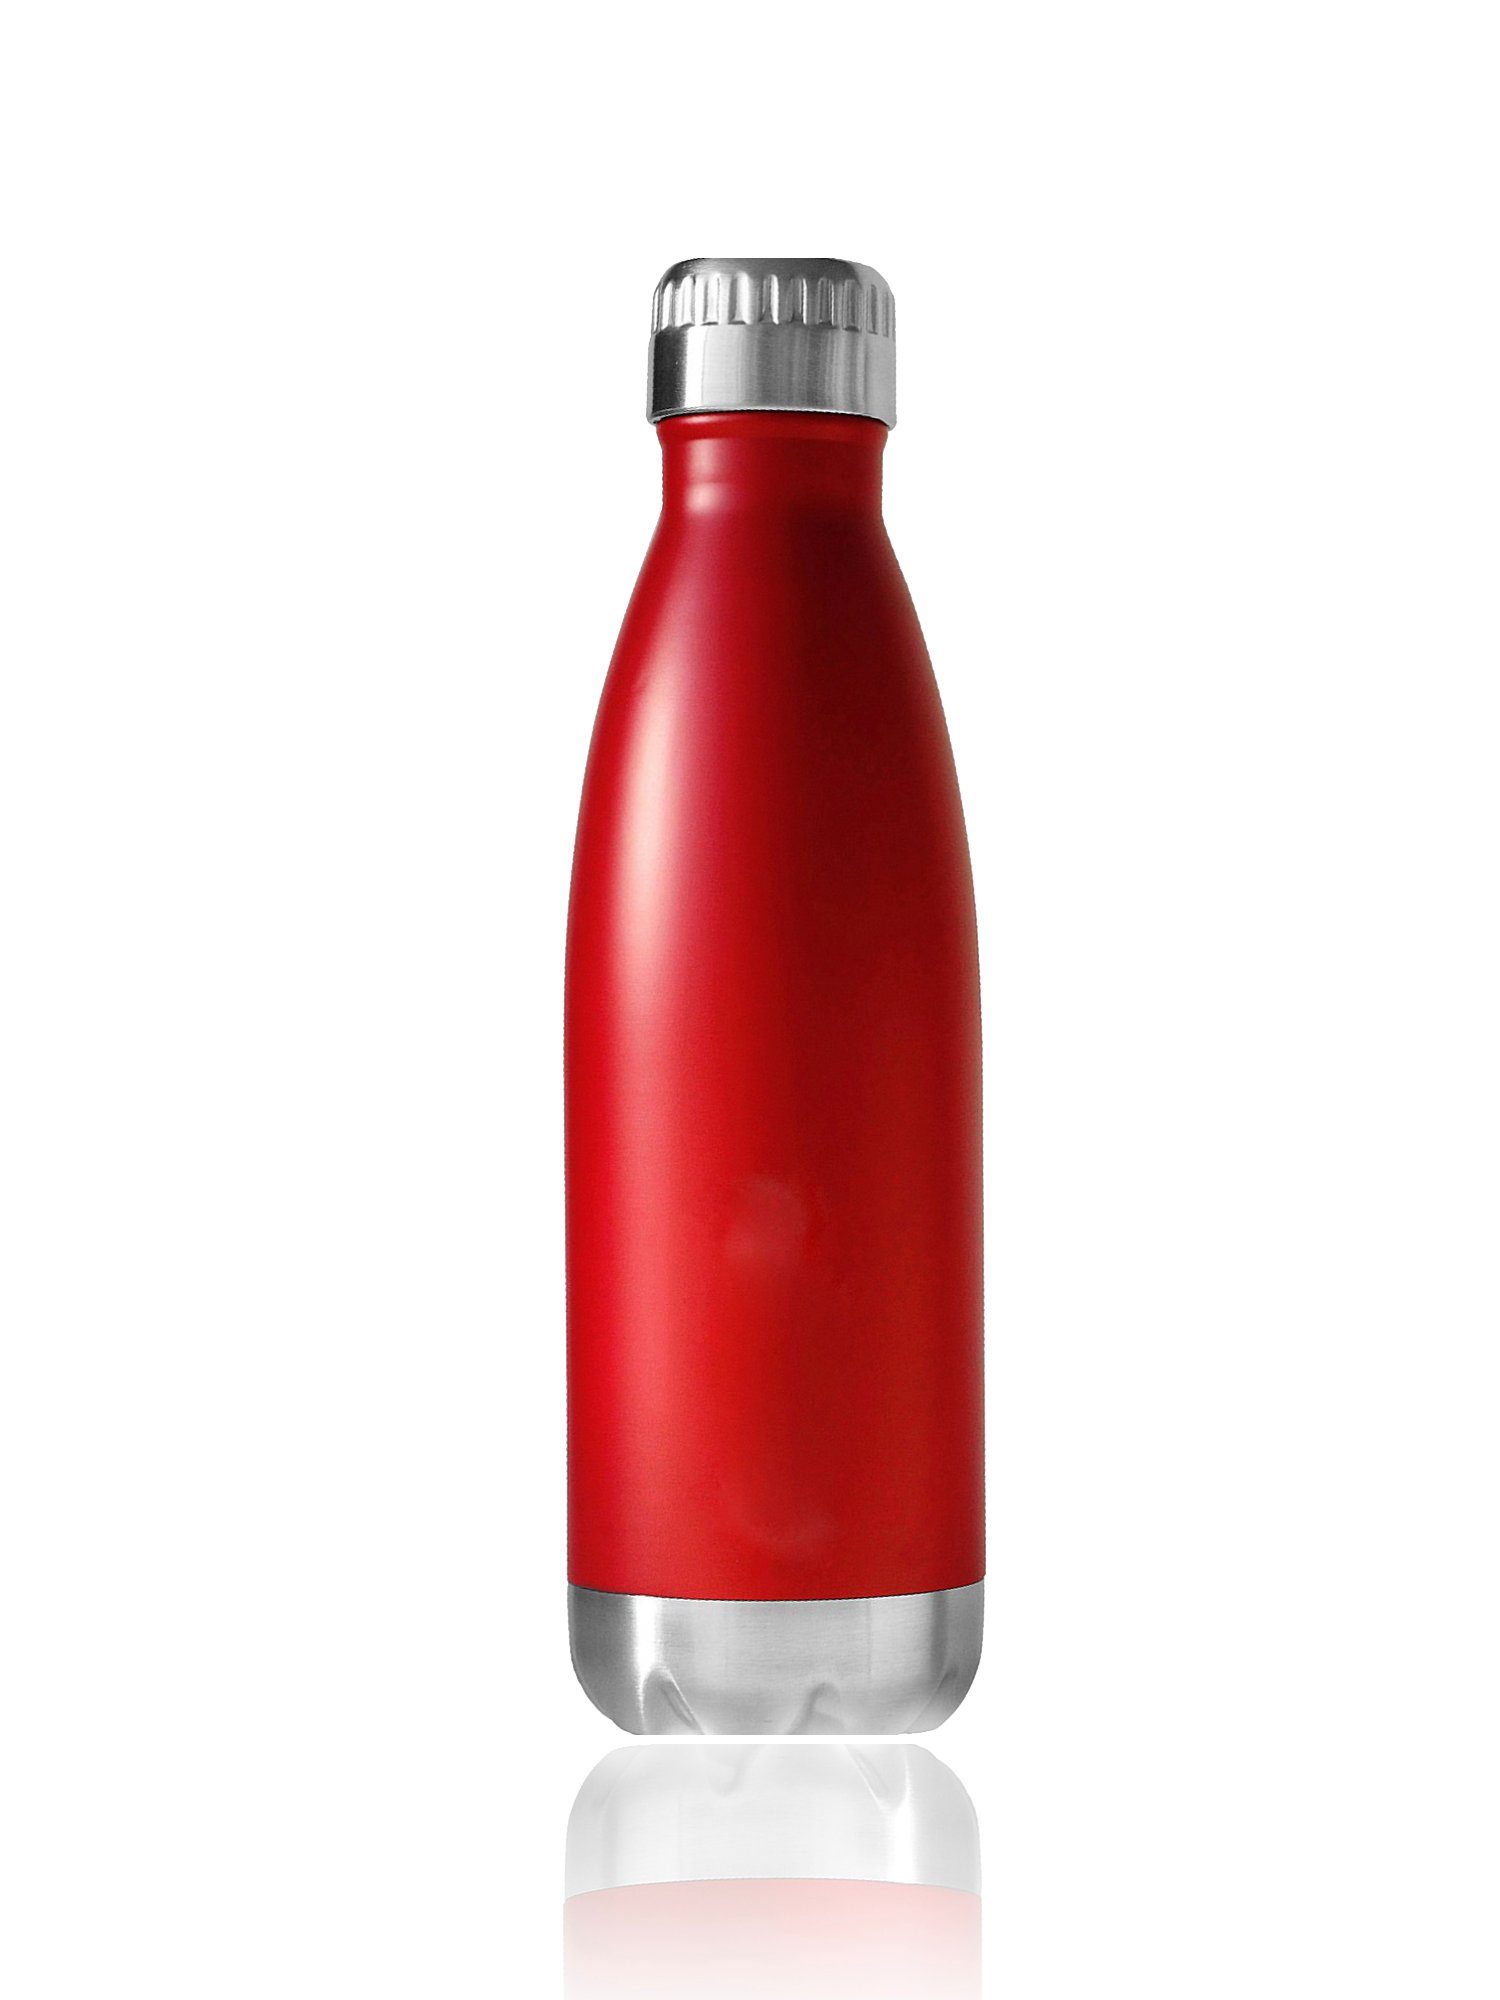 H-basics Thermoflasche »Isolierflasche 500ml - Thermo Flasche aus Edelstahl  für Heissgetränke To-Go oder als Trinkflasche für kalte Getränke perfekt  für unterwegs« online kaufen | OTTO